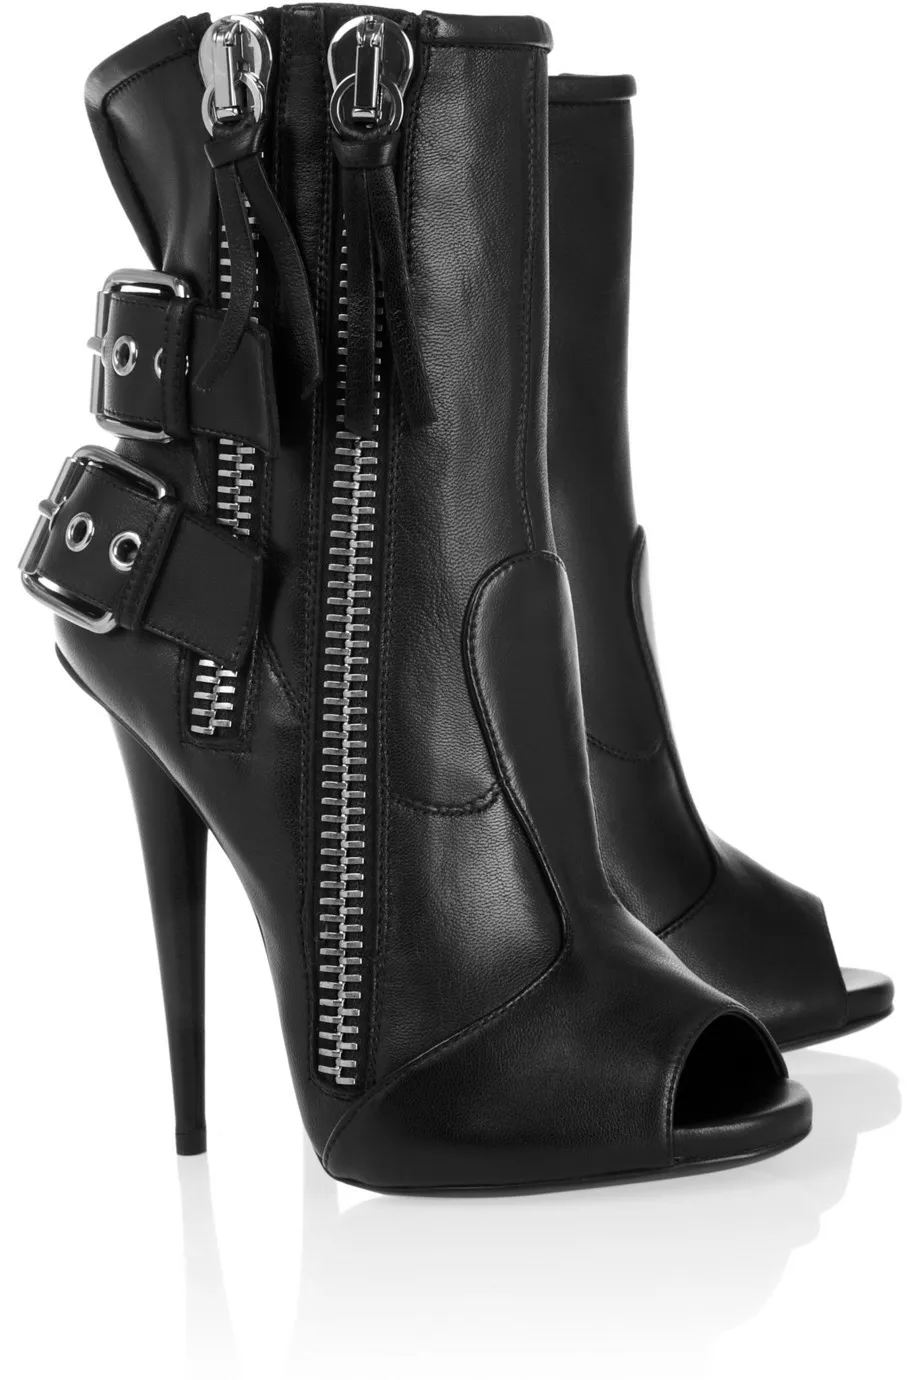 Vară stil de moda pentru Femei Ieftin preț nud negru deschis deget de la picior dublu cu fermoar toc cui papuceii catarama curea rochie grațios pantofi